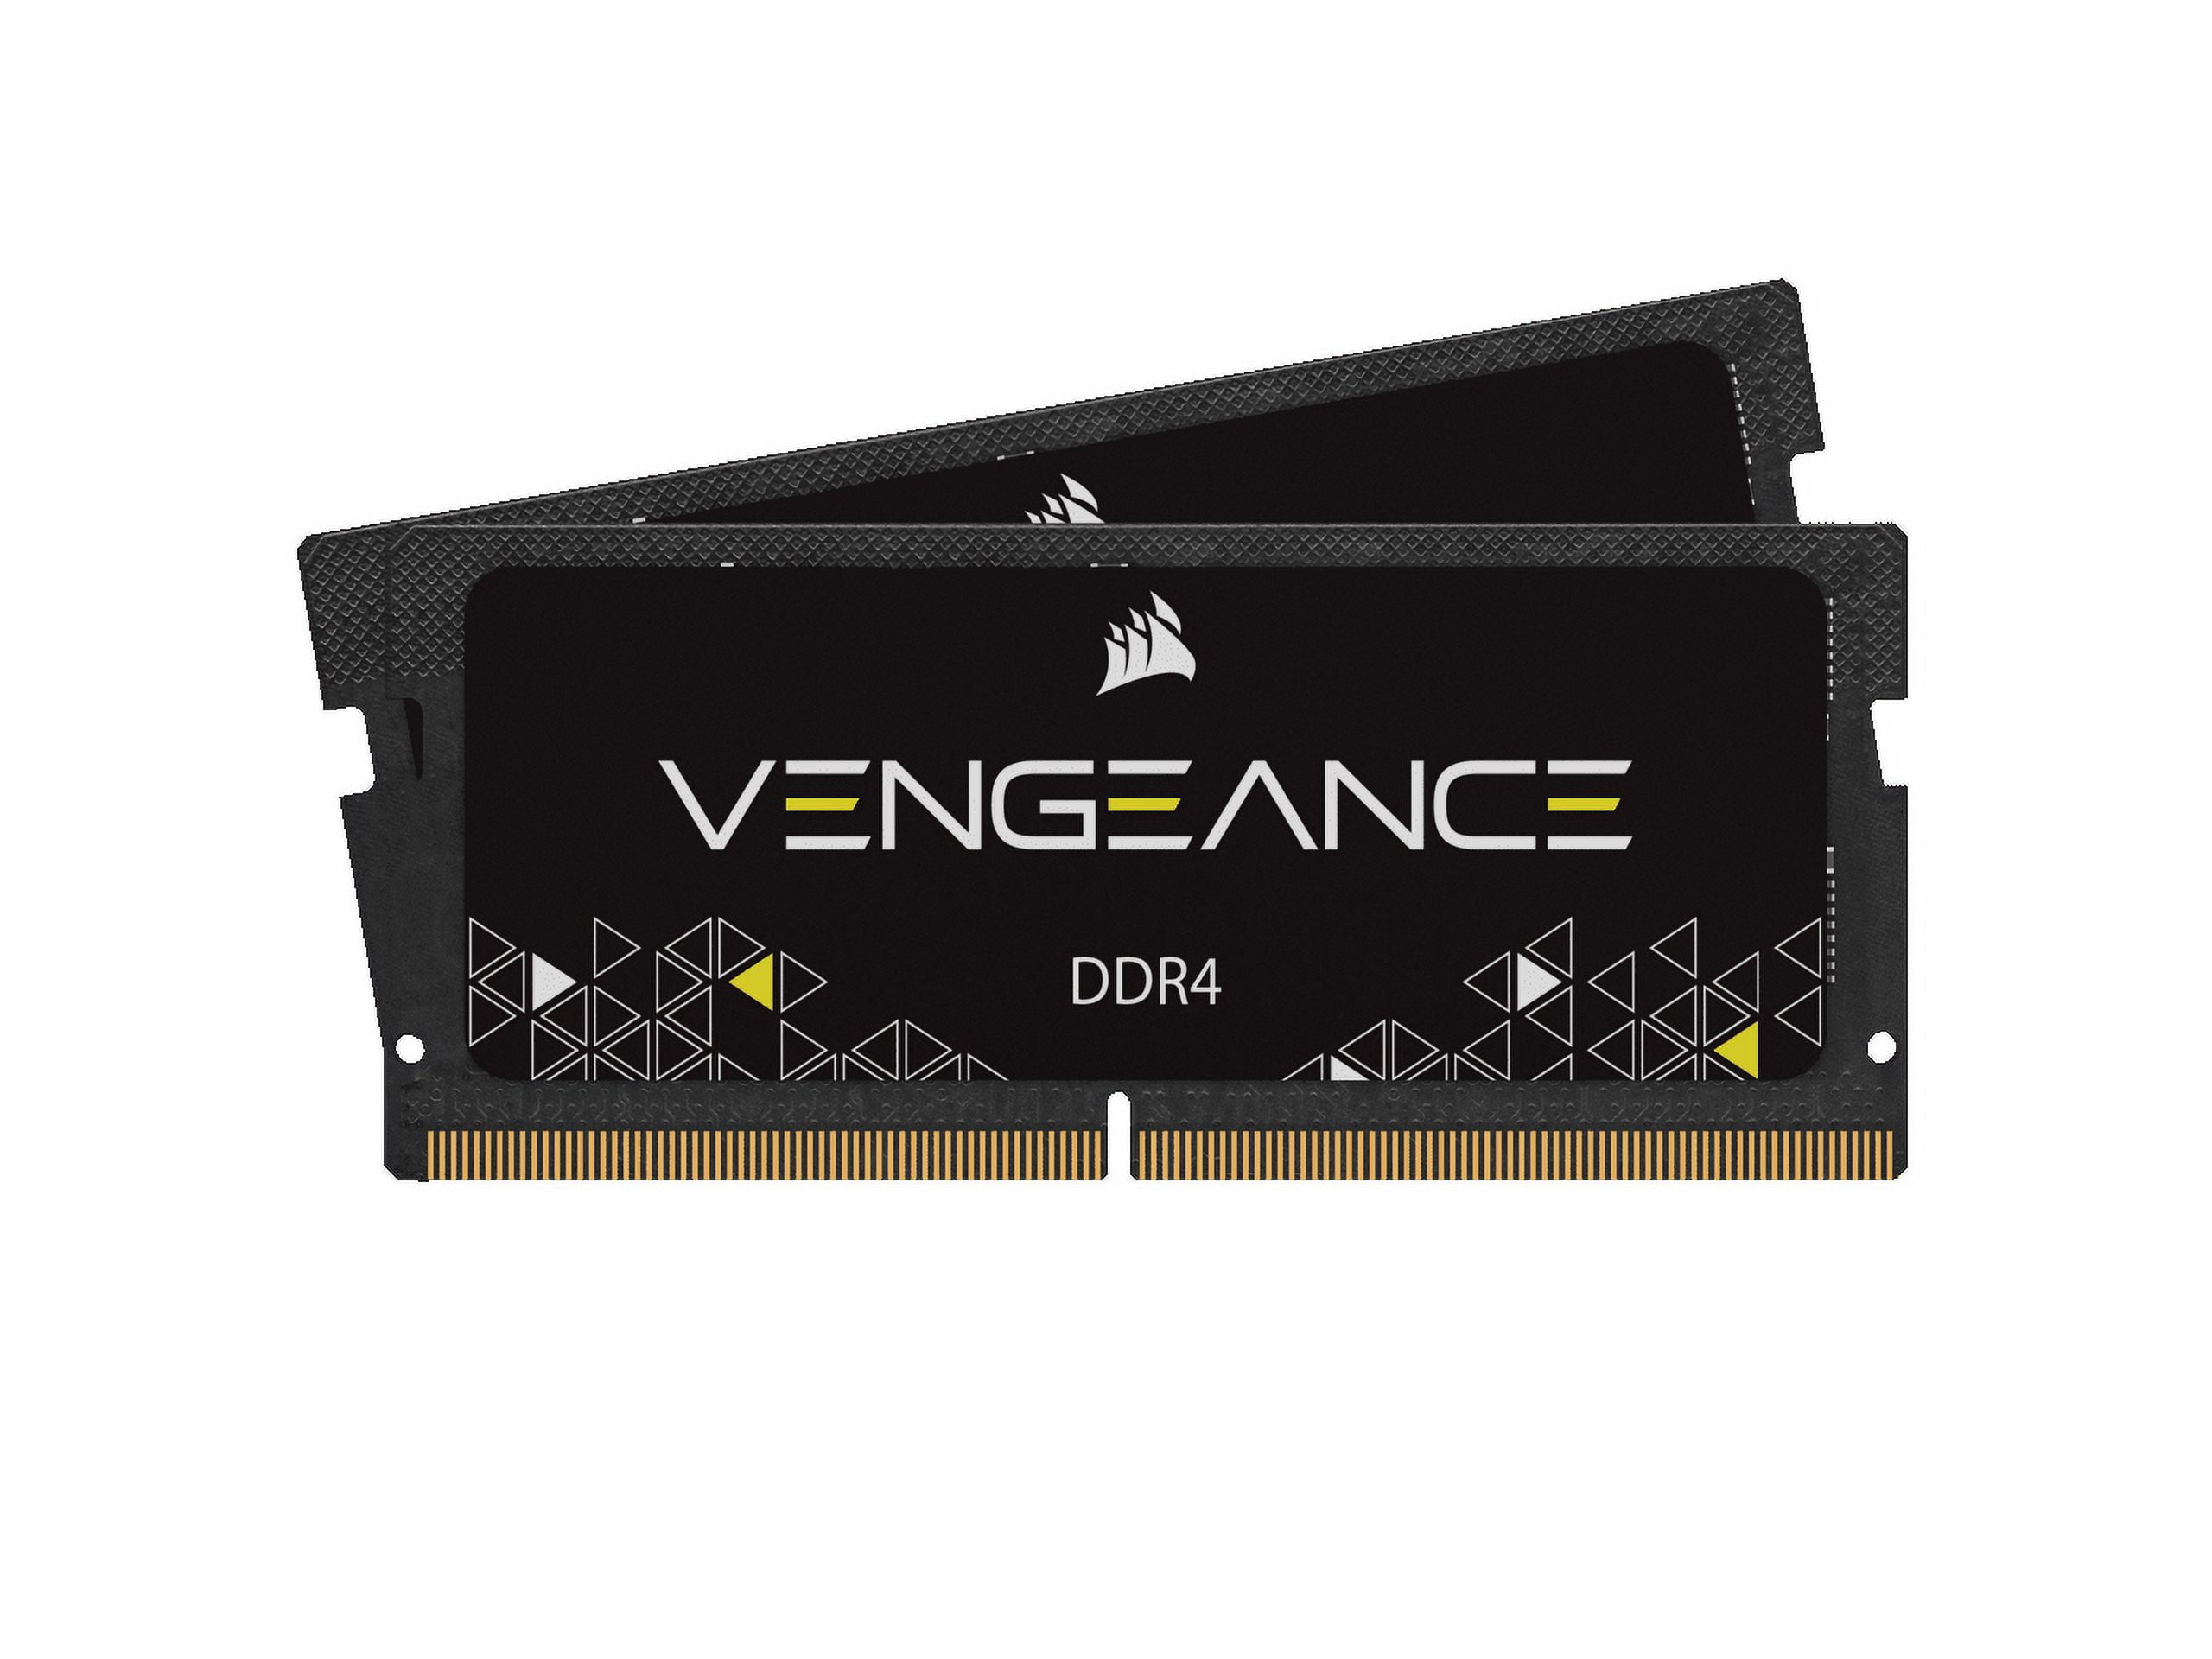 Memoire RAM Corsair Vengeance LPX Series Low Profile 16 Go (2x 8 Go) DDR4  2666 MHz CL16 - Kit Dual Channel 2 barrettes de RAM DDR4 PC4-21300 -  CMK16GX4M2Z2666C16